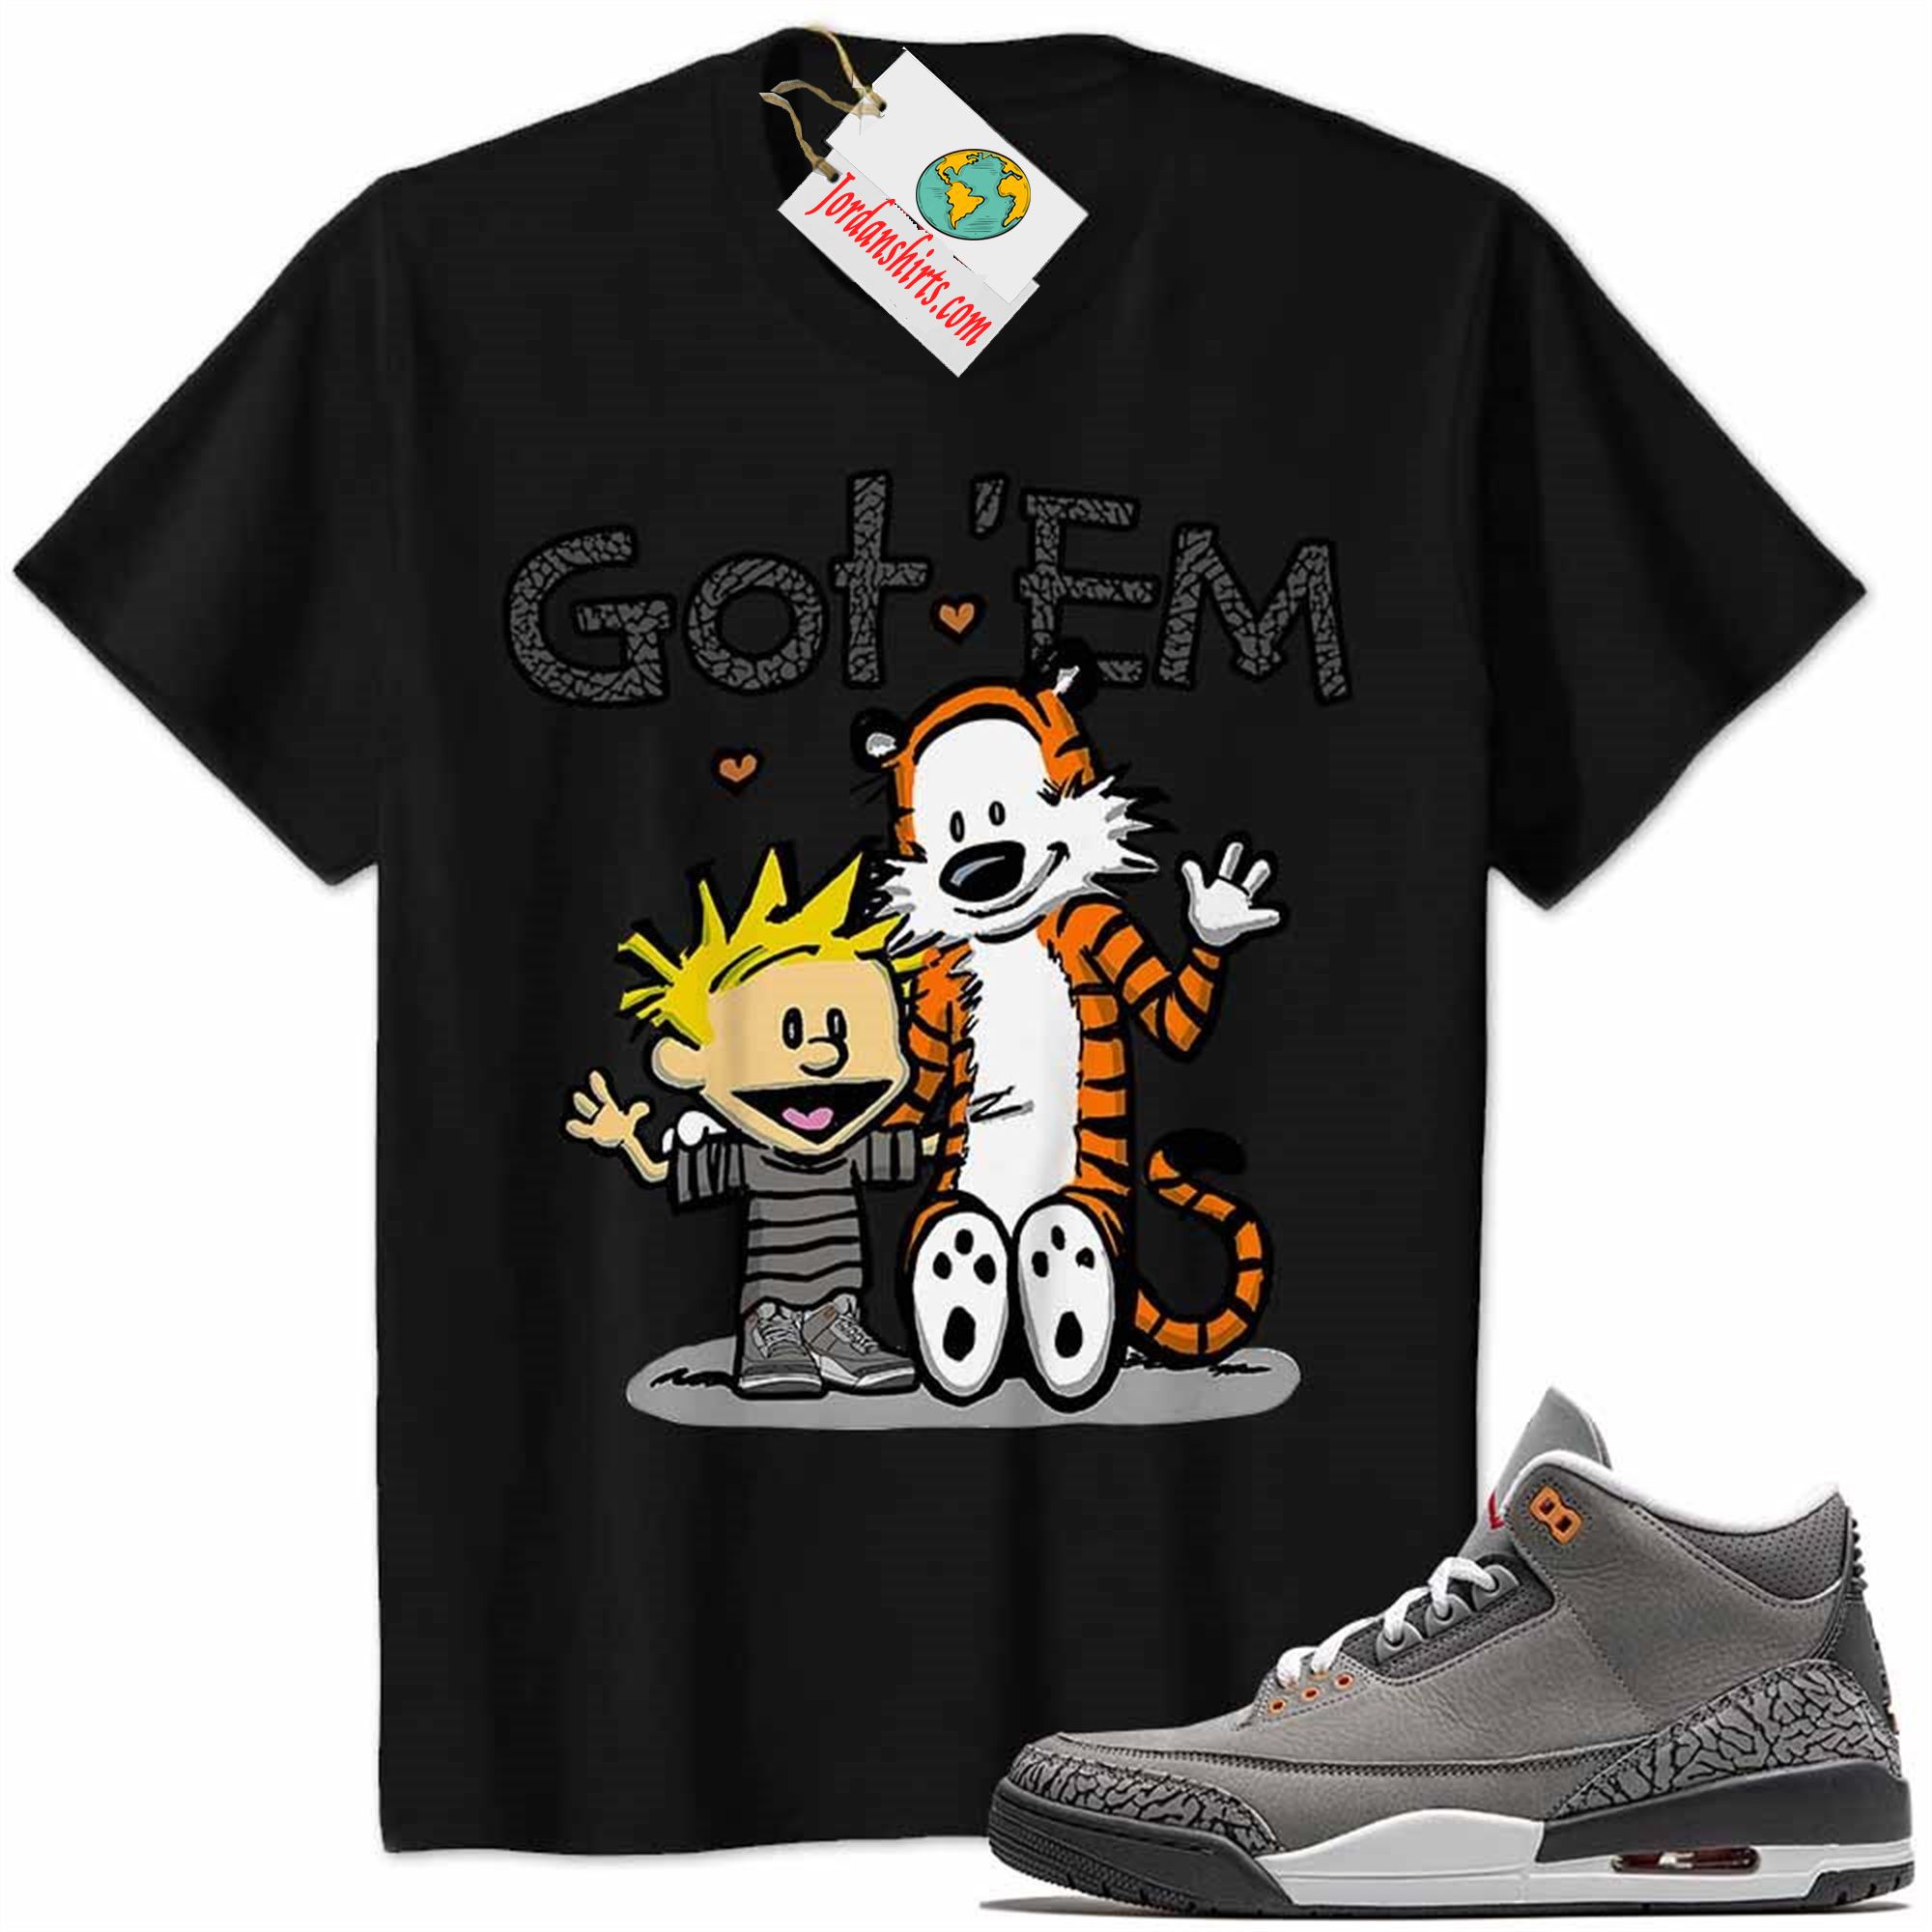 Jordan 3 Shirt, Jordan 3 Cool Grey Shirt Calvin And Hobbes Got Em Black Plus Size Up To 5xl